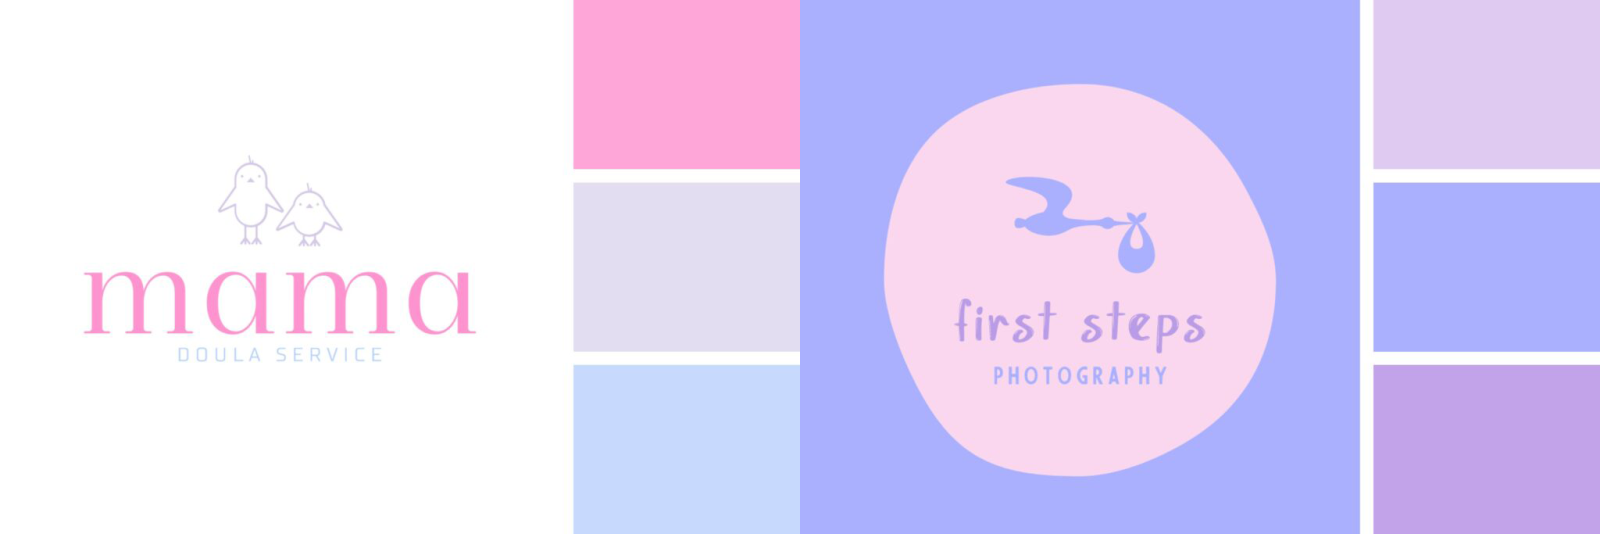 Ví dụ cho logo pastel tone tím và hồng